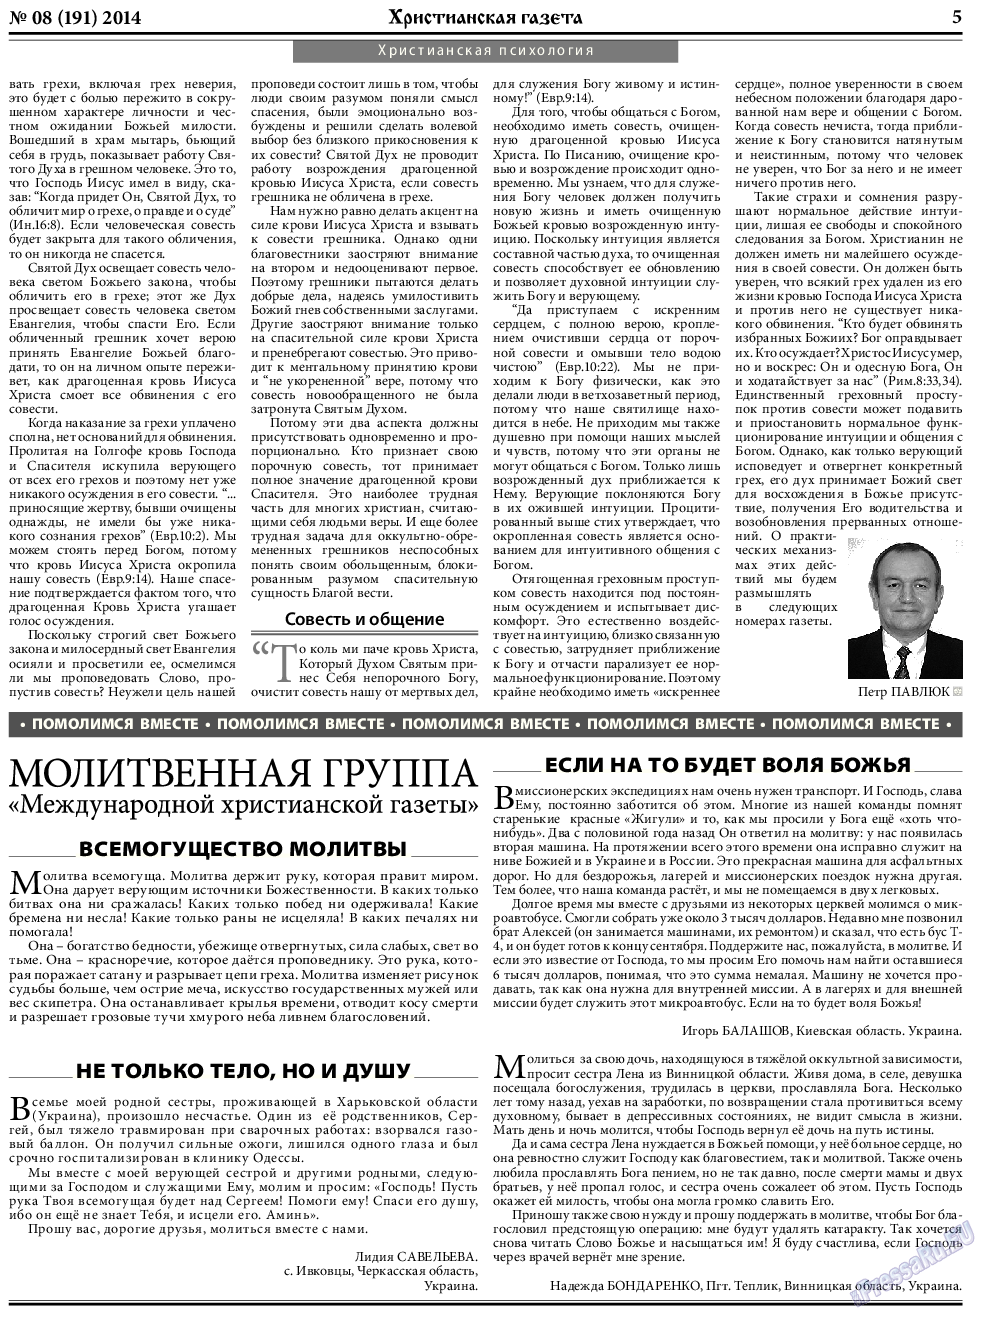 Христианская газета, газета. 2014 №8 стр.5